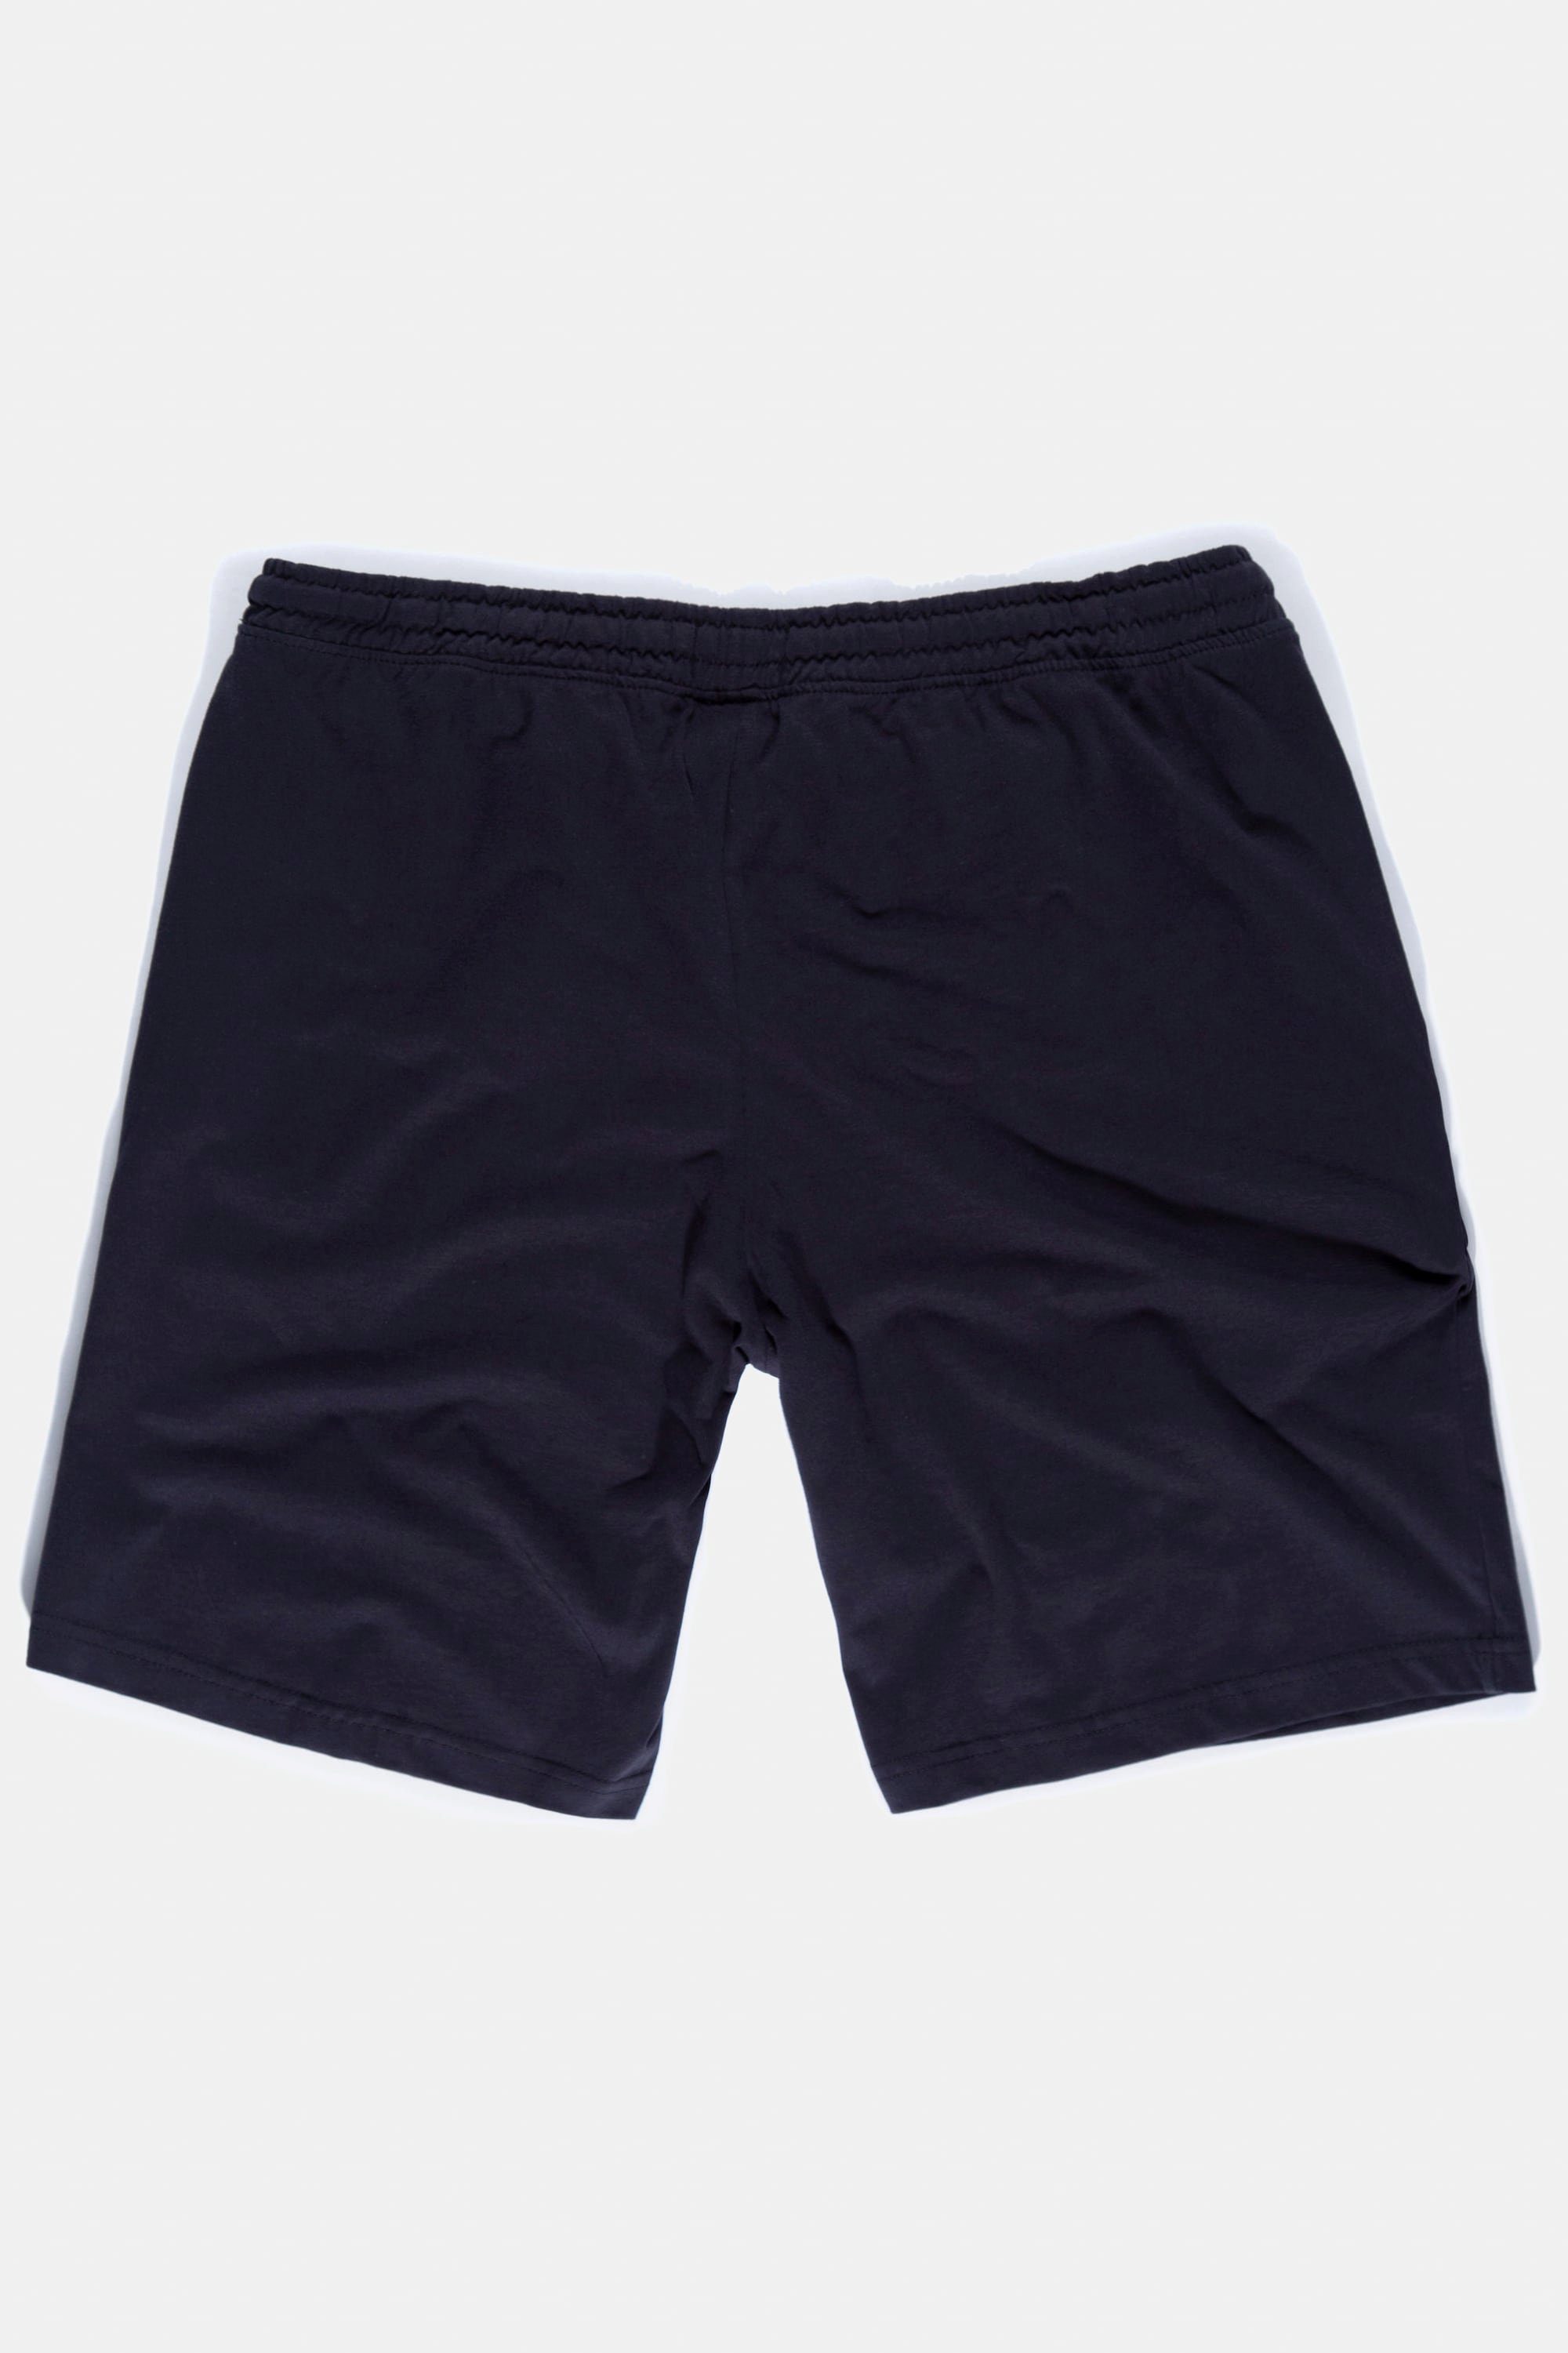 Elastikbund dunkel Schlafanzug Homewear Shorts Schlafanzug marine Hose JP1880